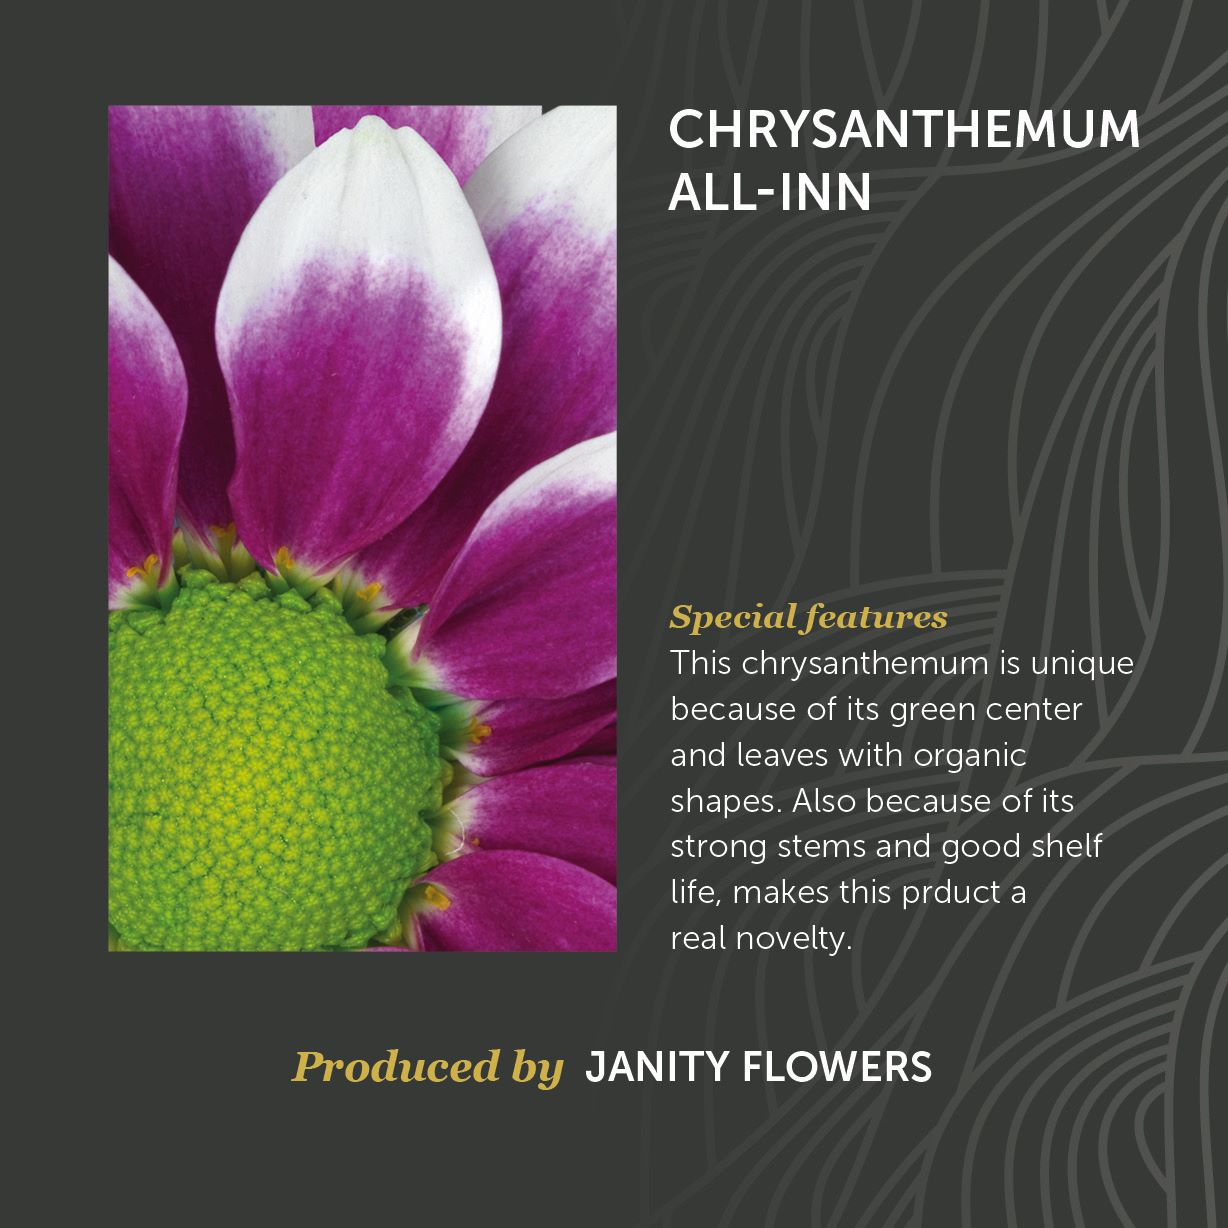 Chrysanthemum All-Inn